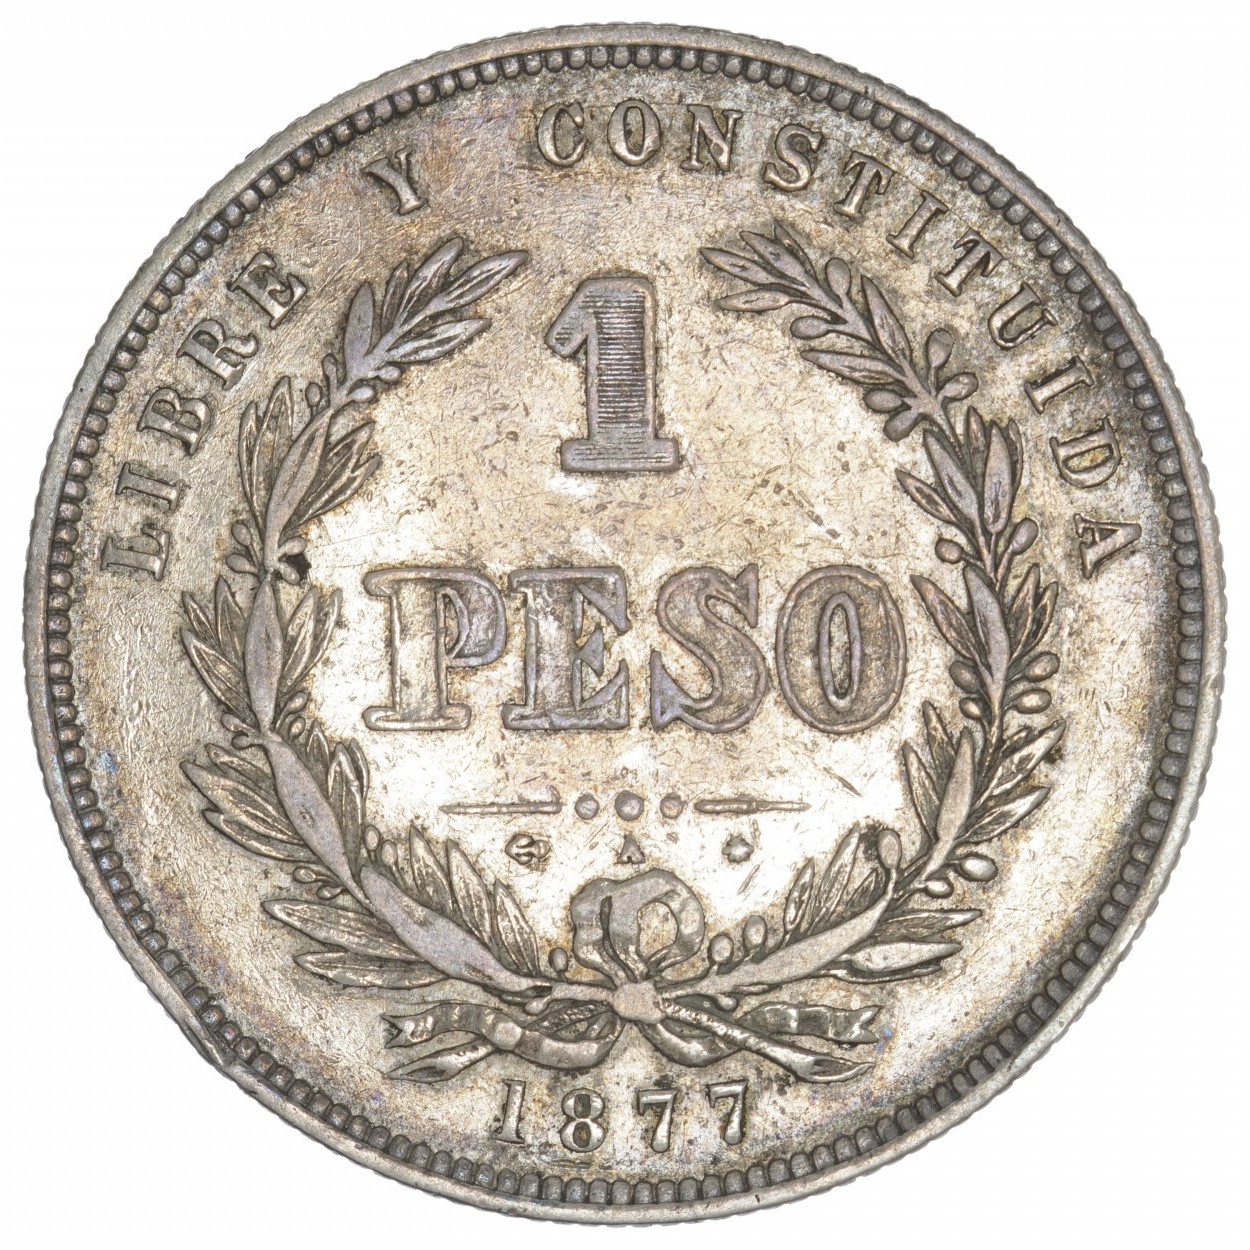 Uruguay - 1 peso - 1877 A revers